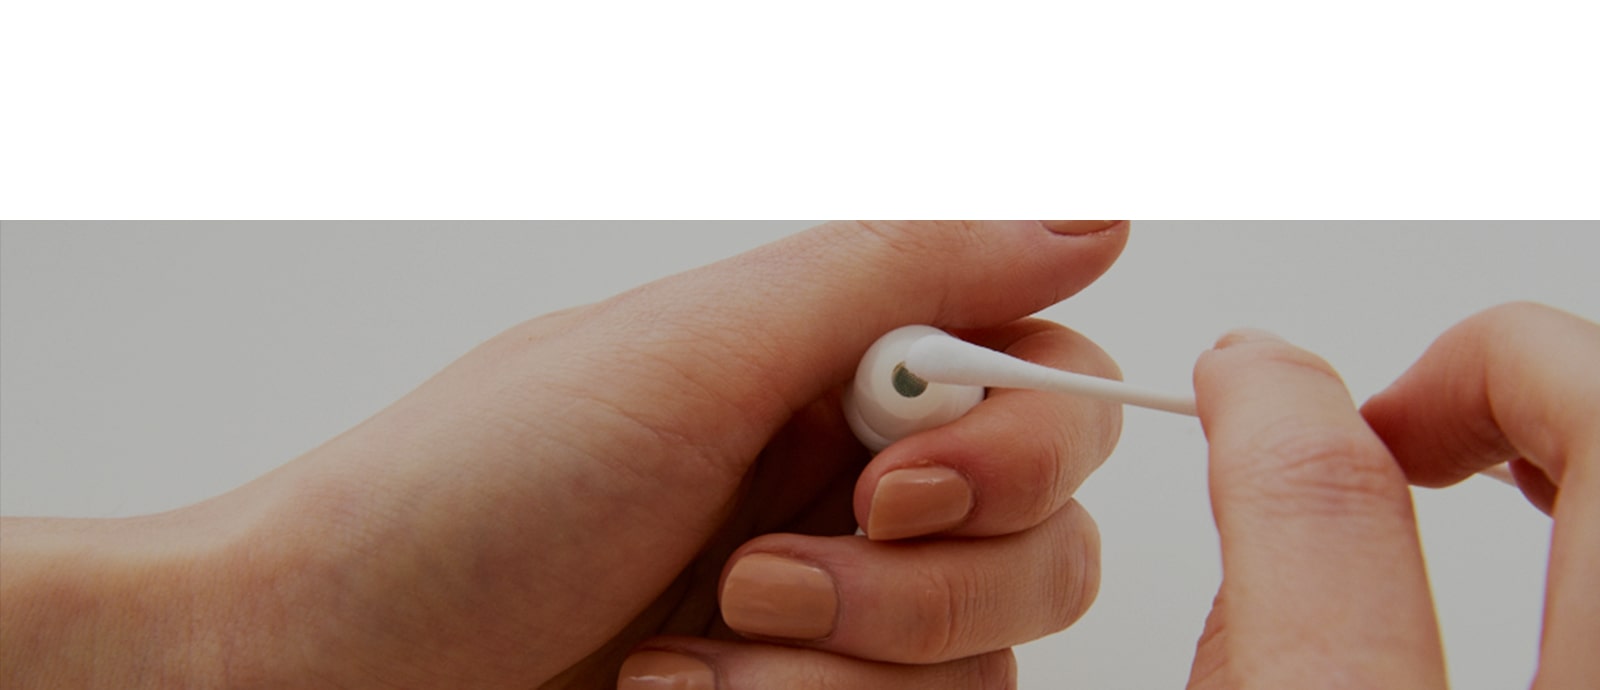 Et bilde av holding av øreproppene i hånden og tørke av øreproppene med en bomullspinne, og uttrykke alvorlighetsgraden av bakteriene i øreproppene.